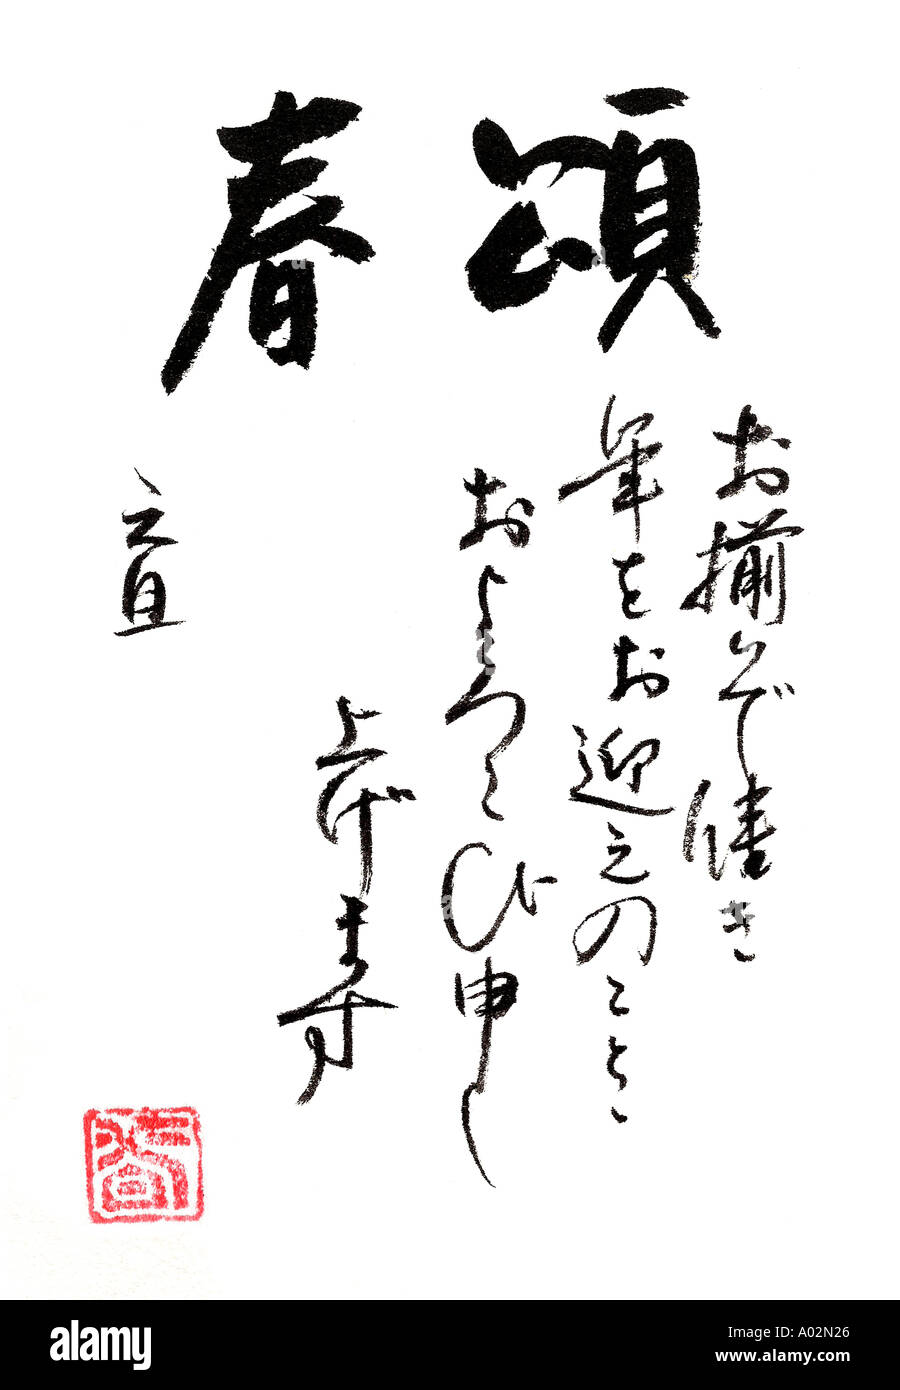 Saluto di celebrazione di buona volontà e di felicità per un sano sereno anno nuovo Calligraphy di Naomi Saso di Nara Giappone Foto Stock